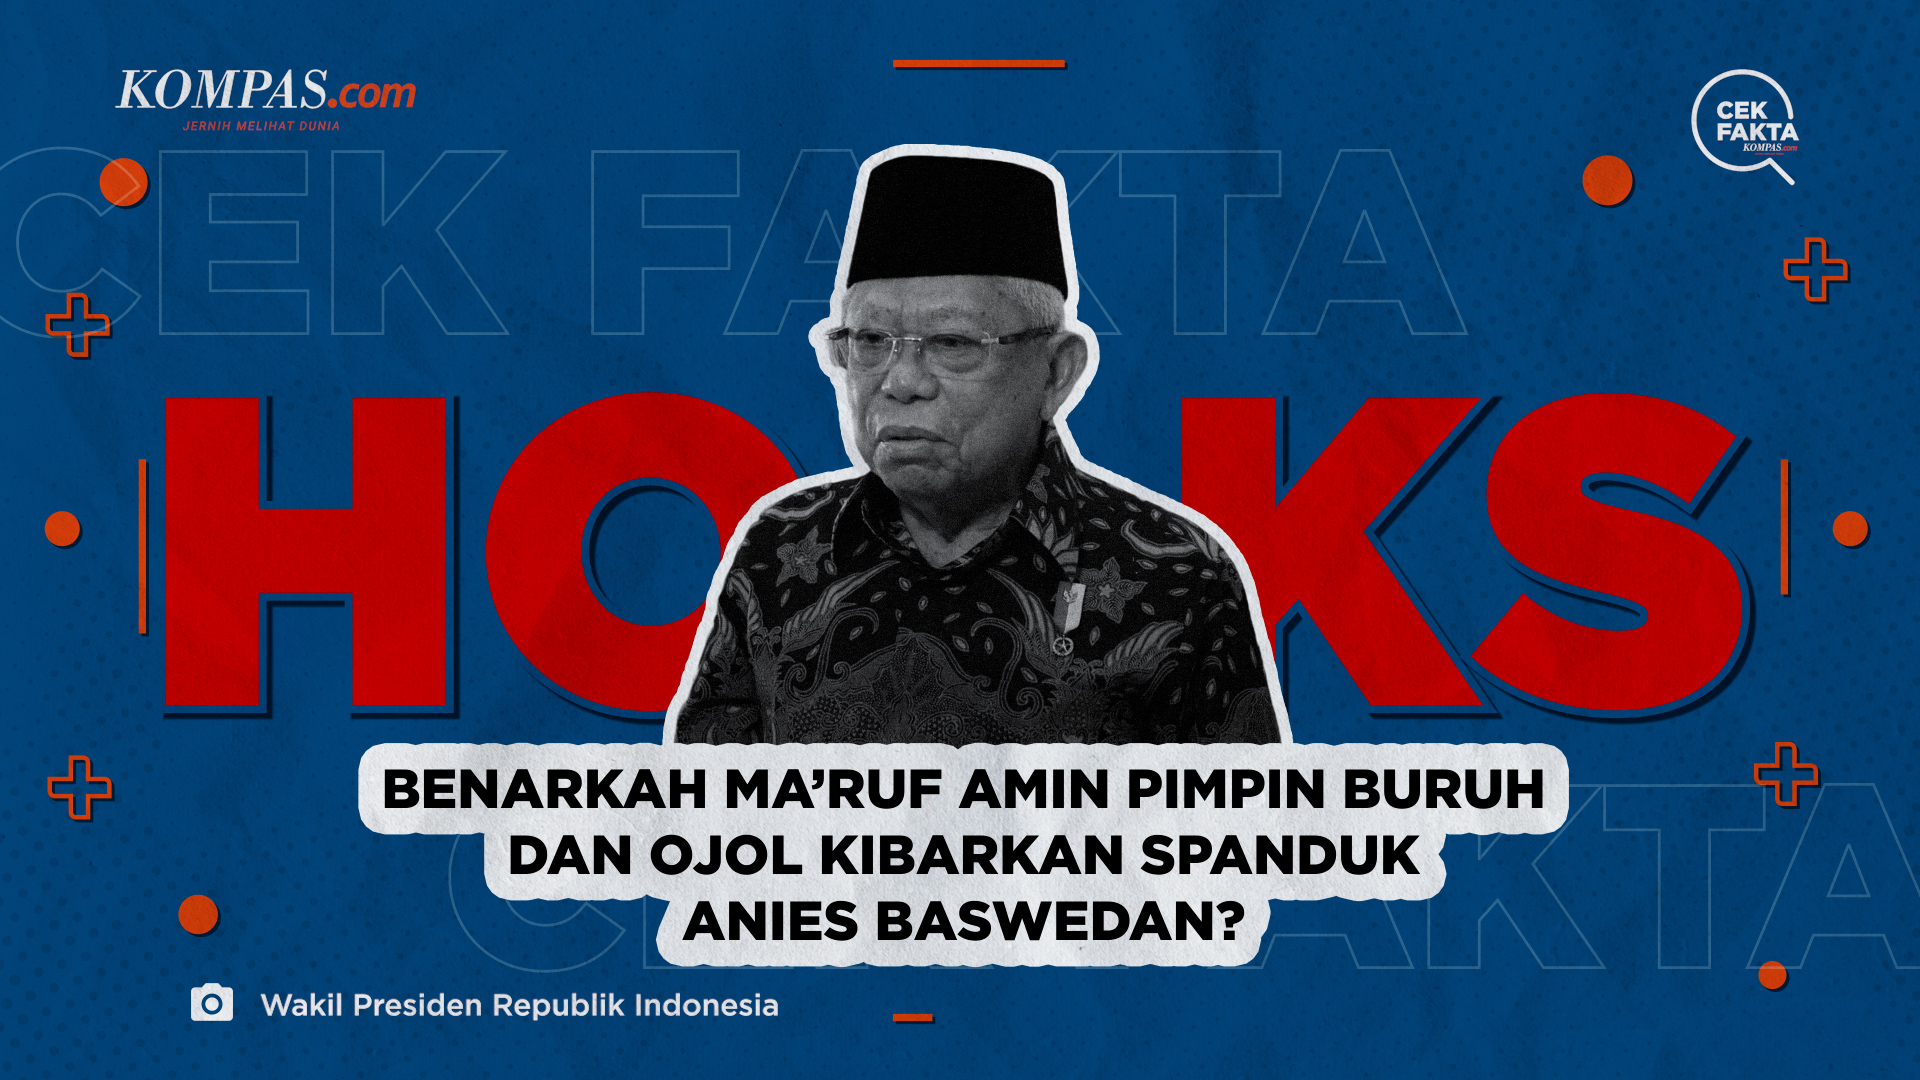 Benarkah Ma'ruf Amin Pimpin Buruh dan Ojol Kibarkan Spanduk Anies Baswedan?